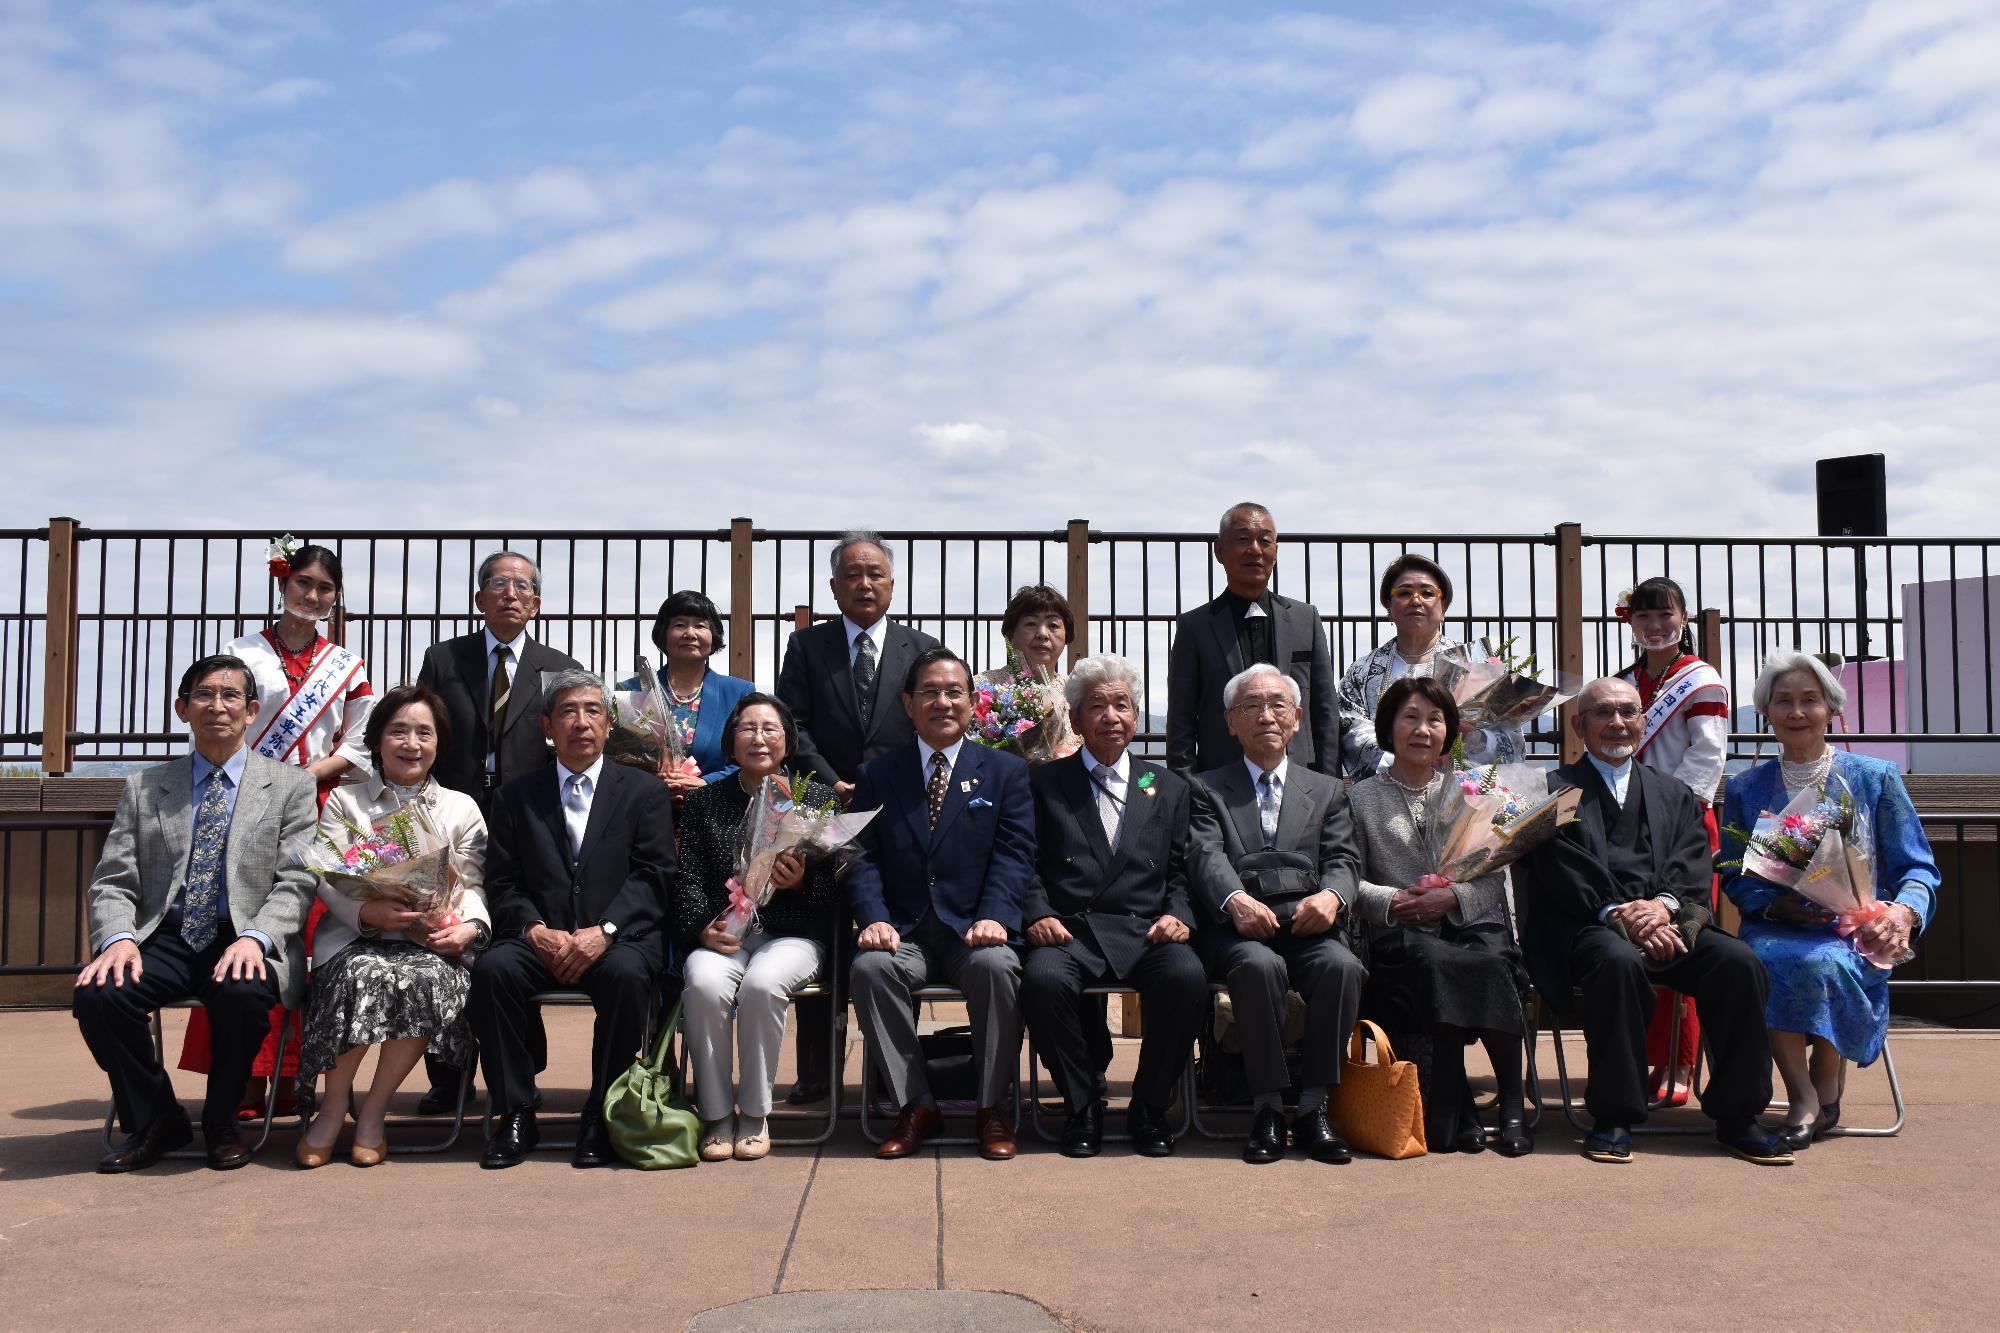 天守台展望施設で椅子に並んで座り記念撮影をする金婚式参加者夫婦7組と市長、飯田会長女王卑弥呼の二人